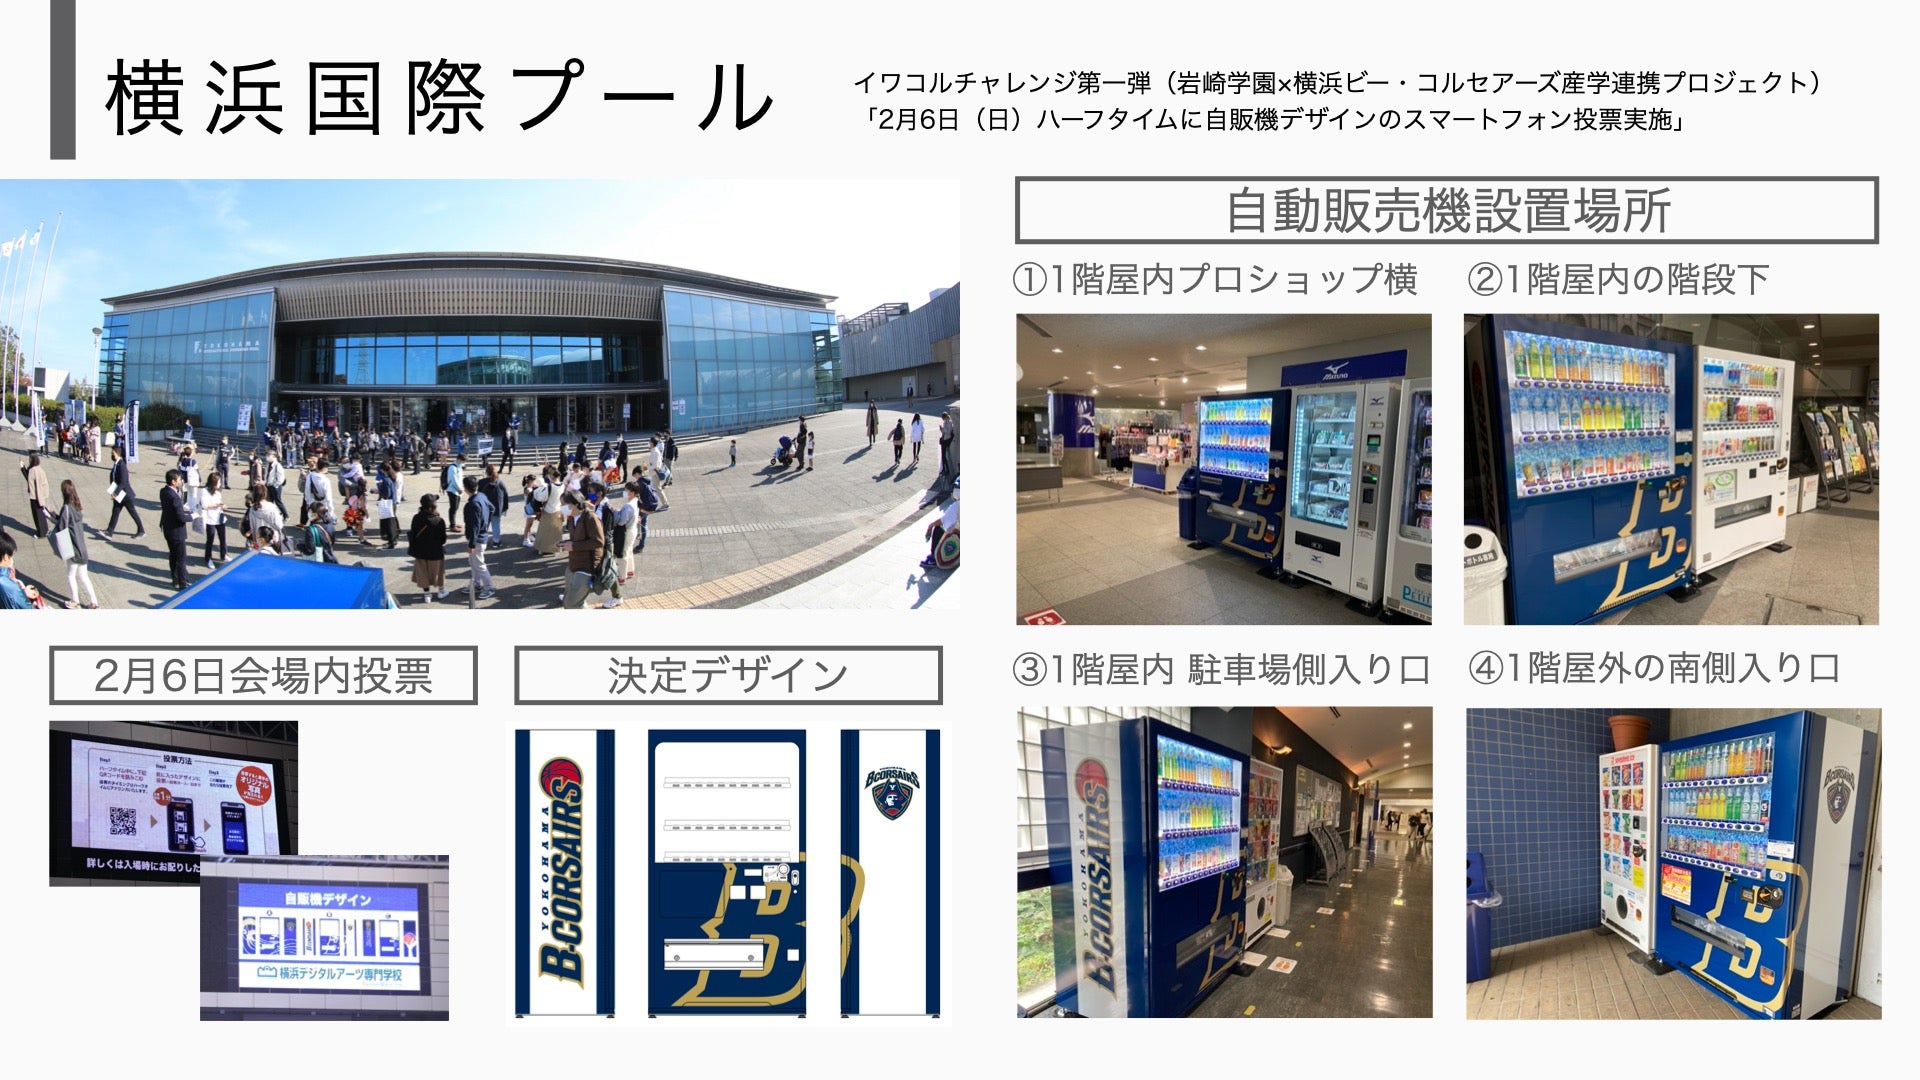 【イワコルチャレンジ第1弾活動報告】自販機デザインスマートフォン投票で決定したビーコル自販機が横浜国際プールに設置されました！
